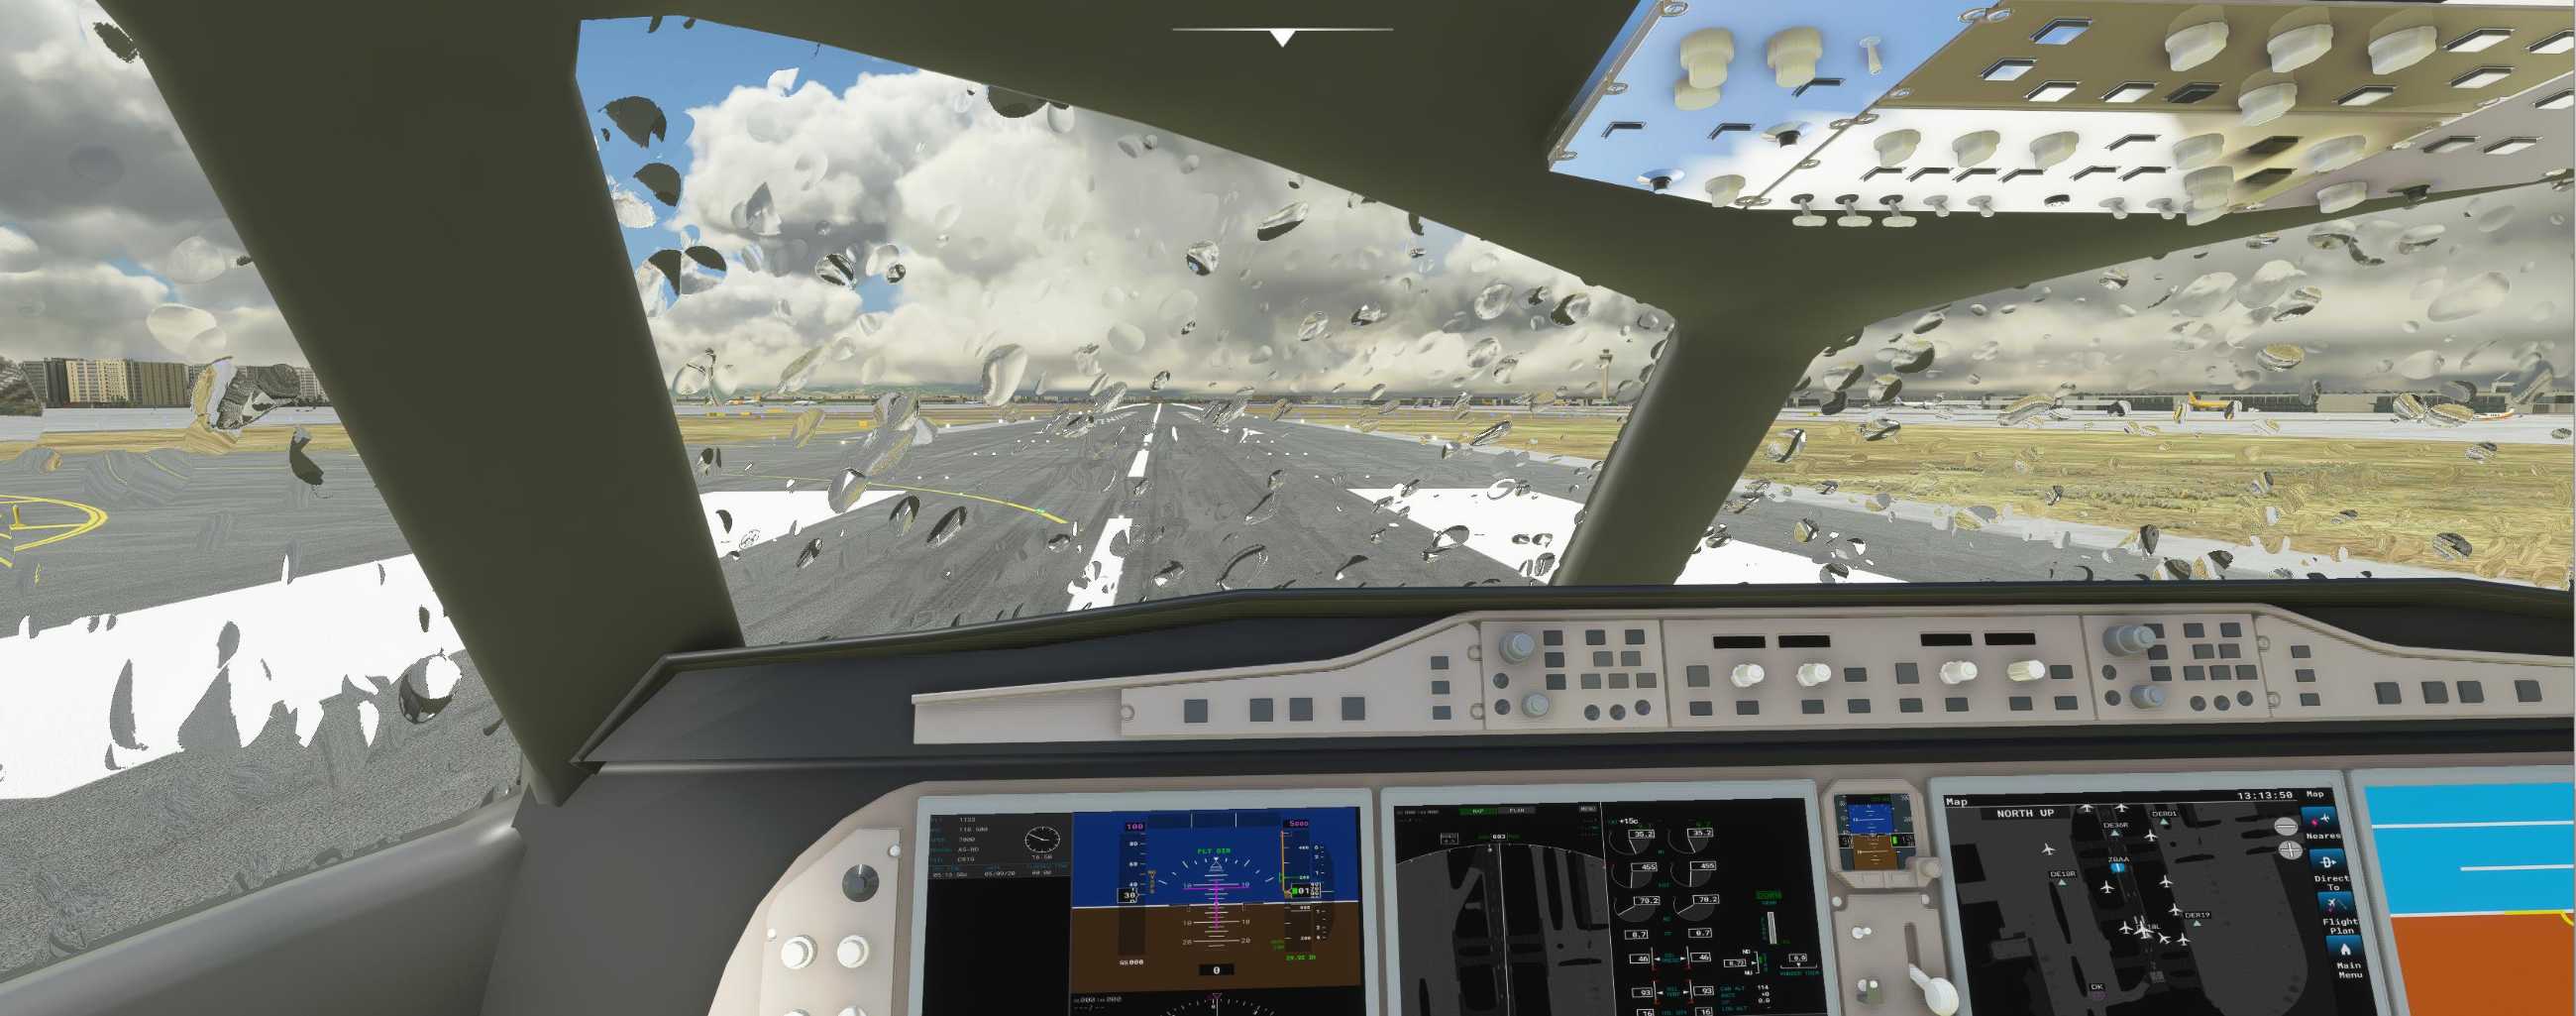 FYCYC-C919 国产大飞机机模 微软模拟飞行演示-4306 